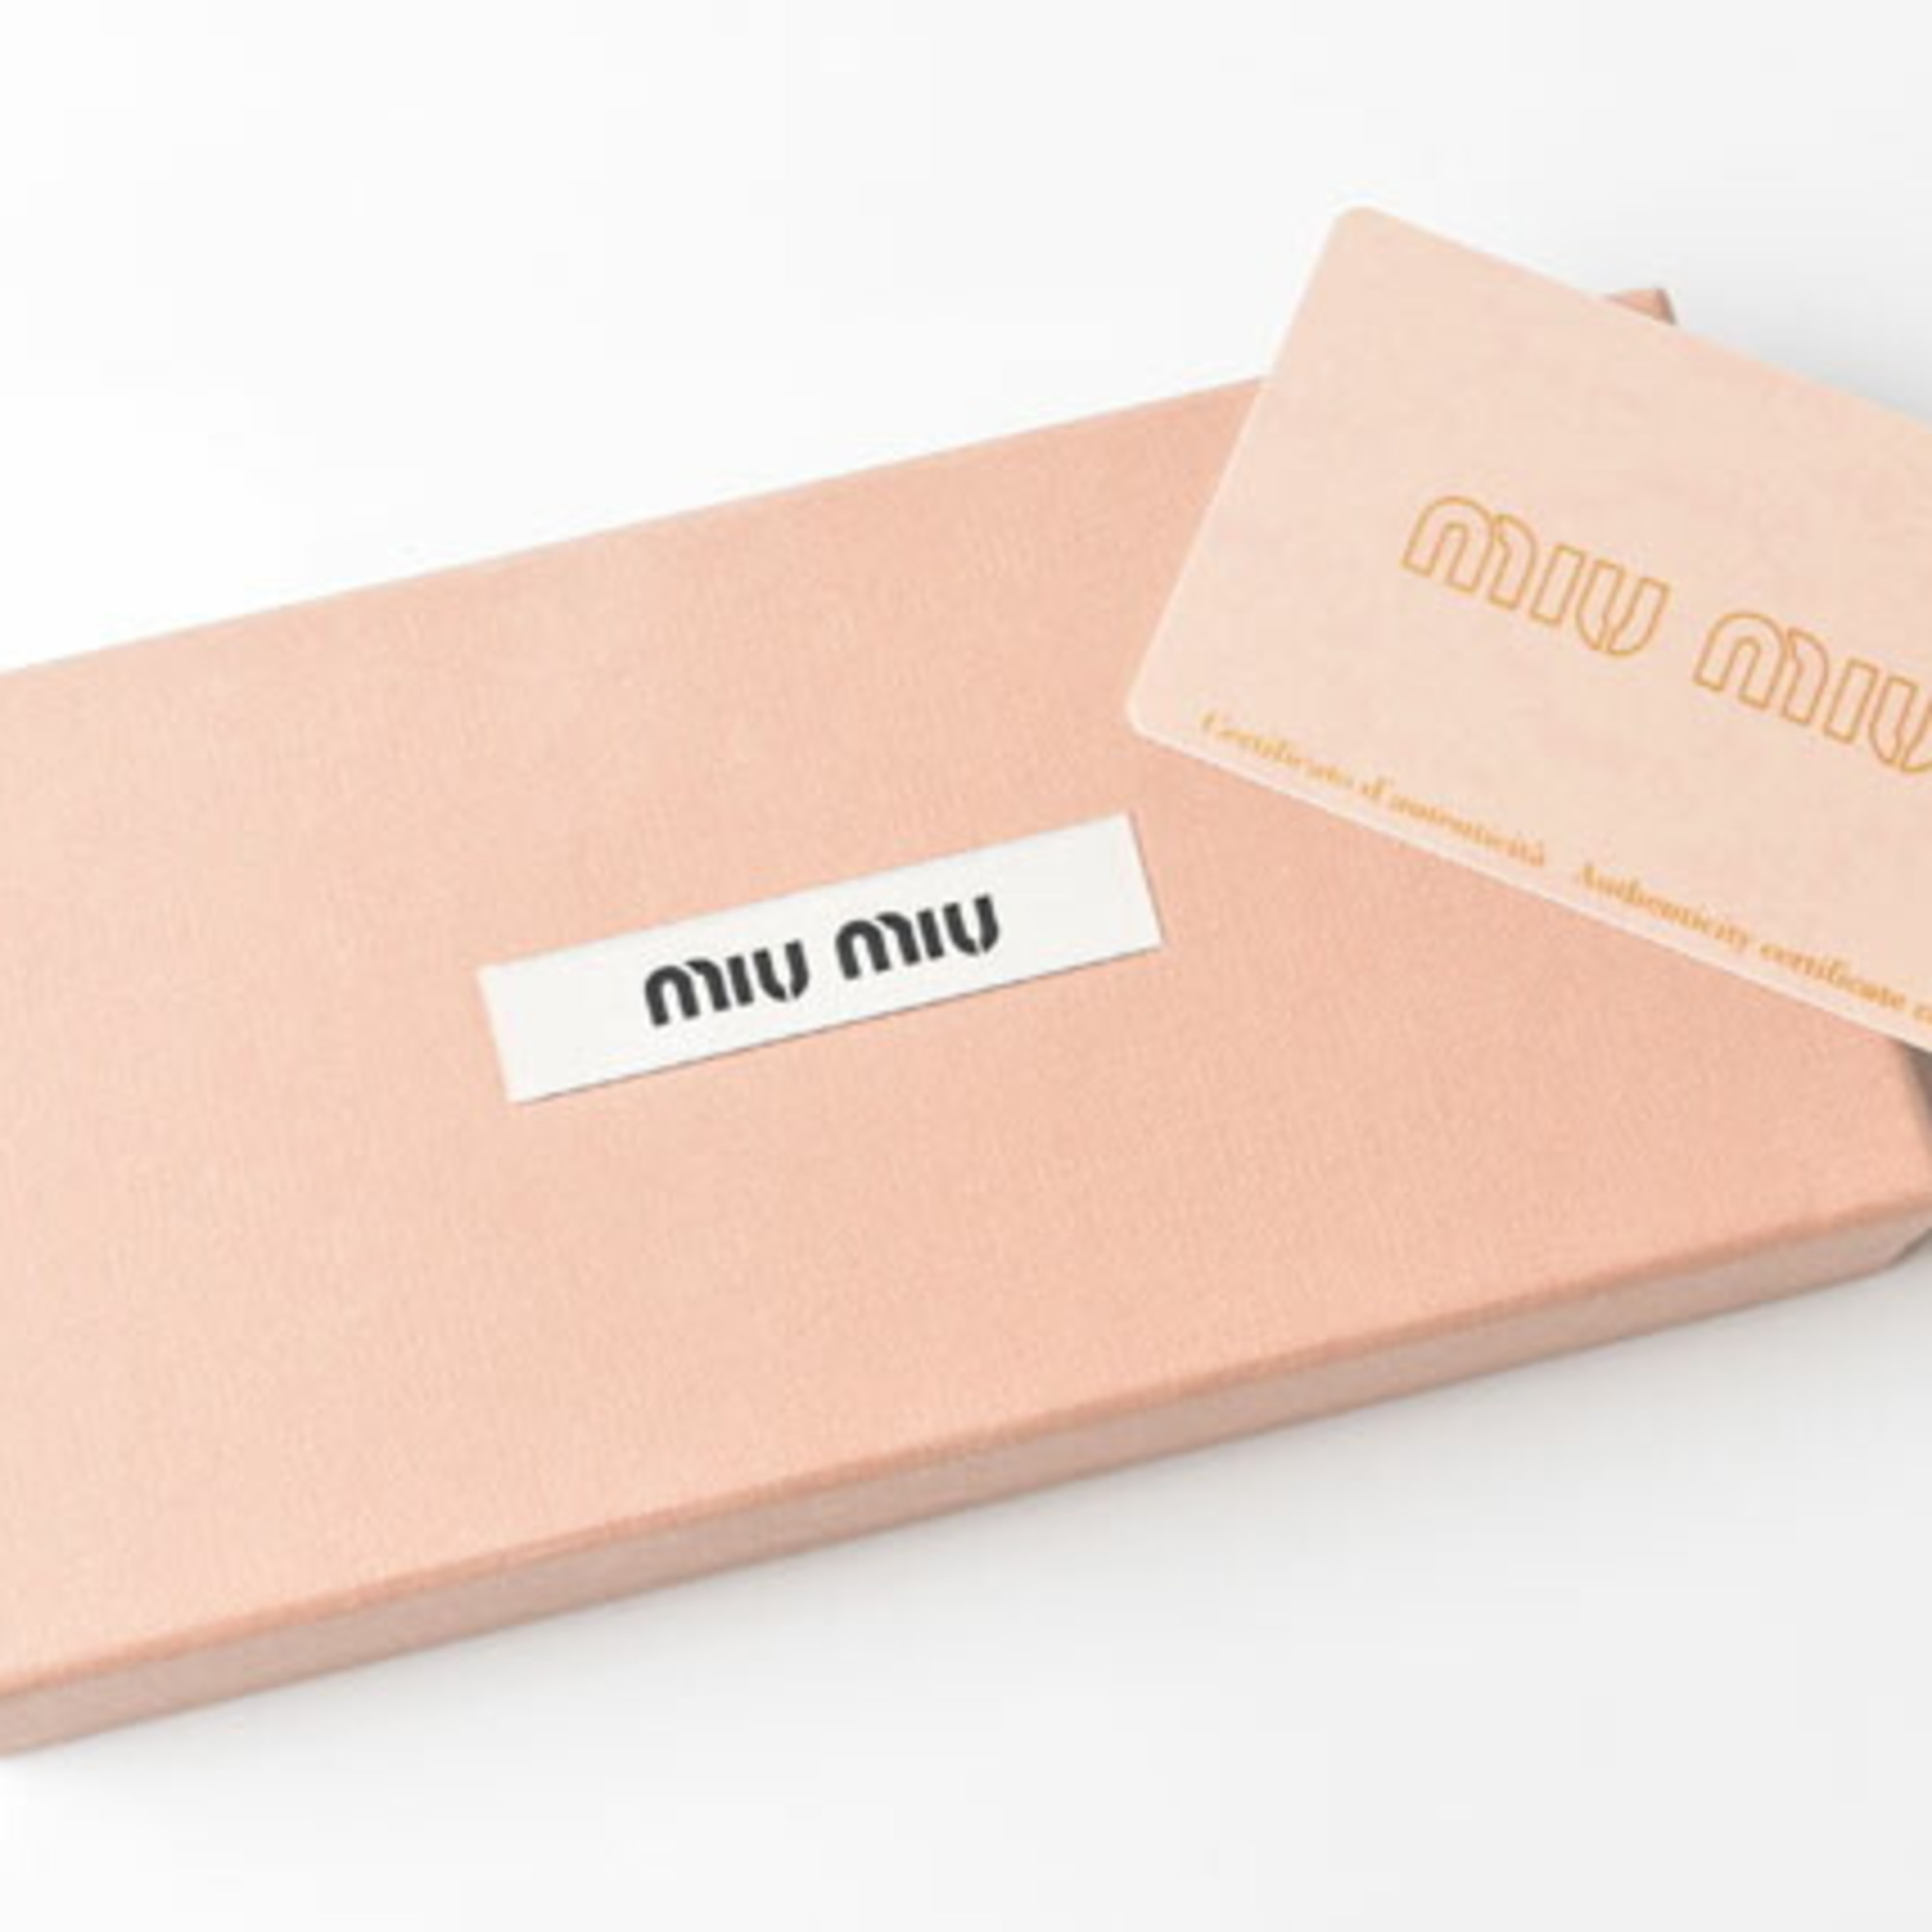 Miu Miu Miu key case miumiu 6 rows MATELASSE CAMMEO pink beige 5M0604